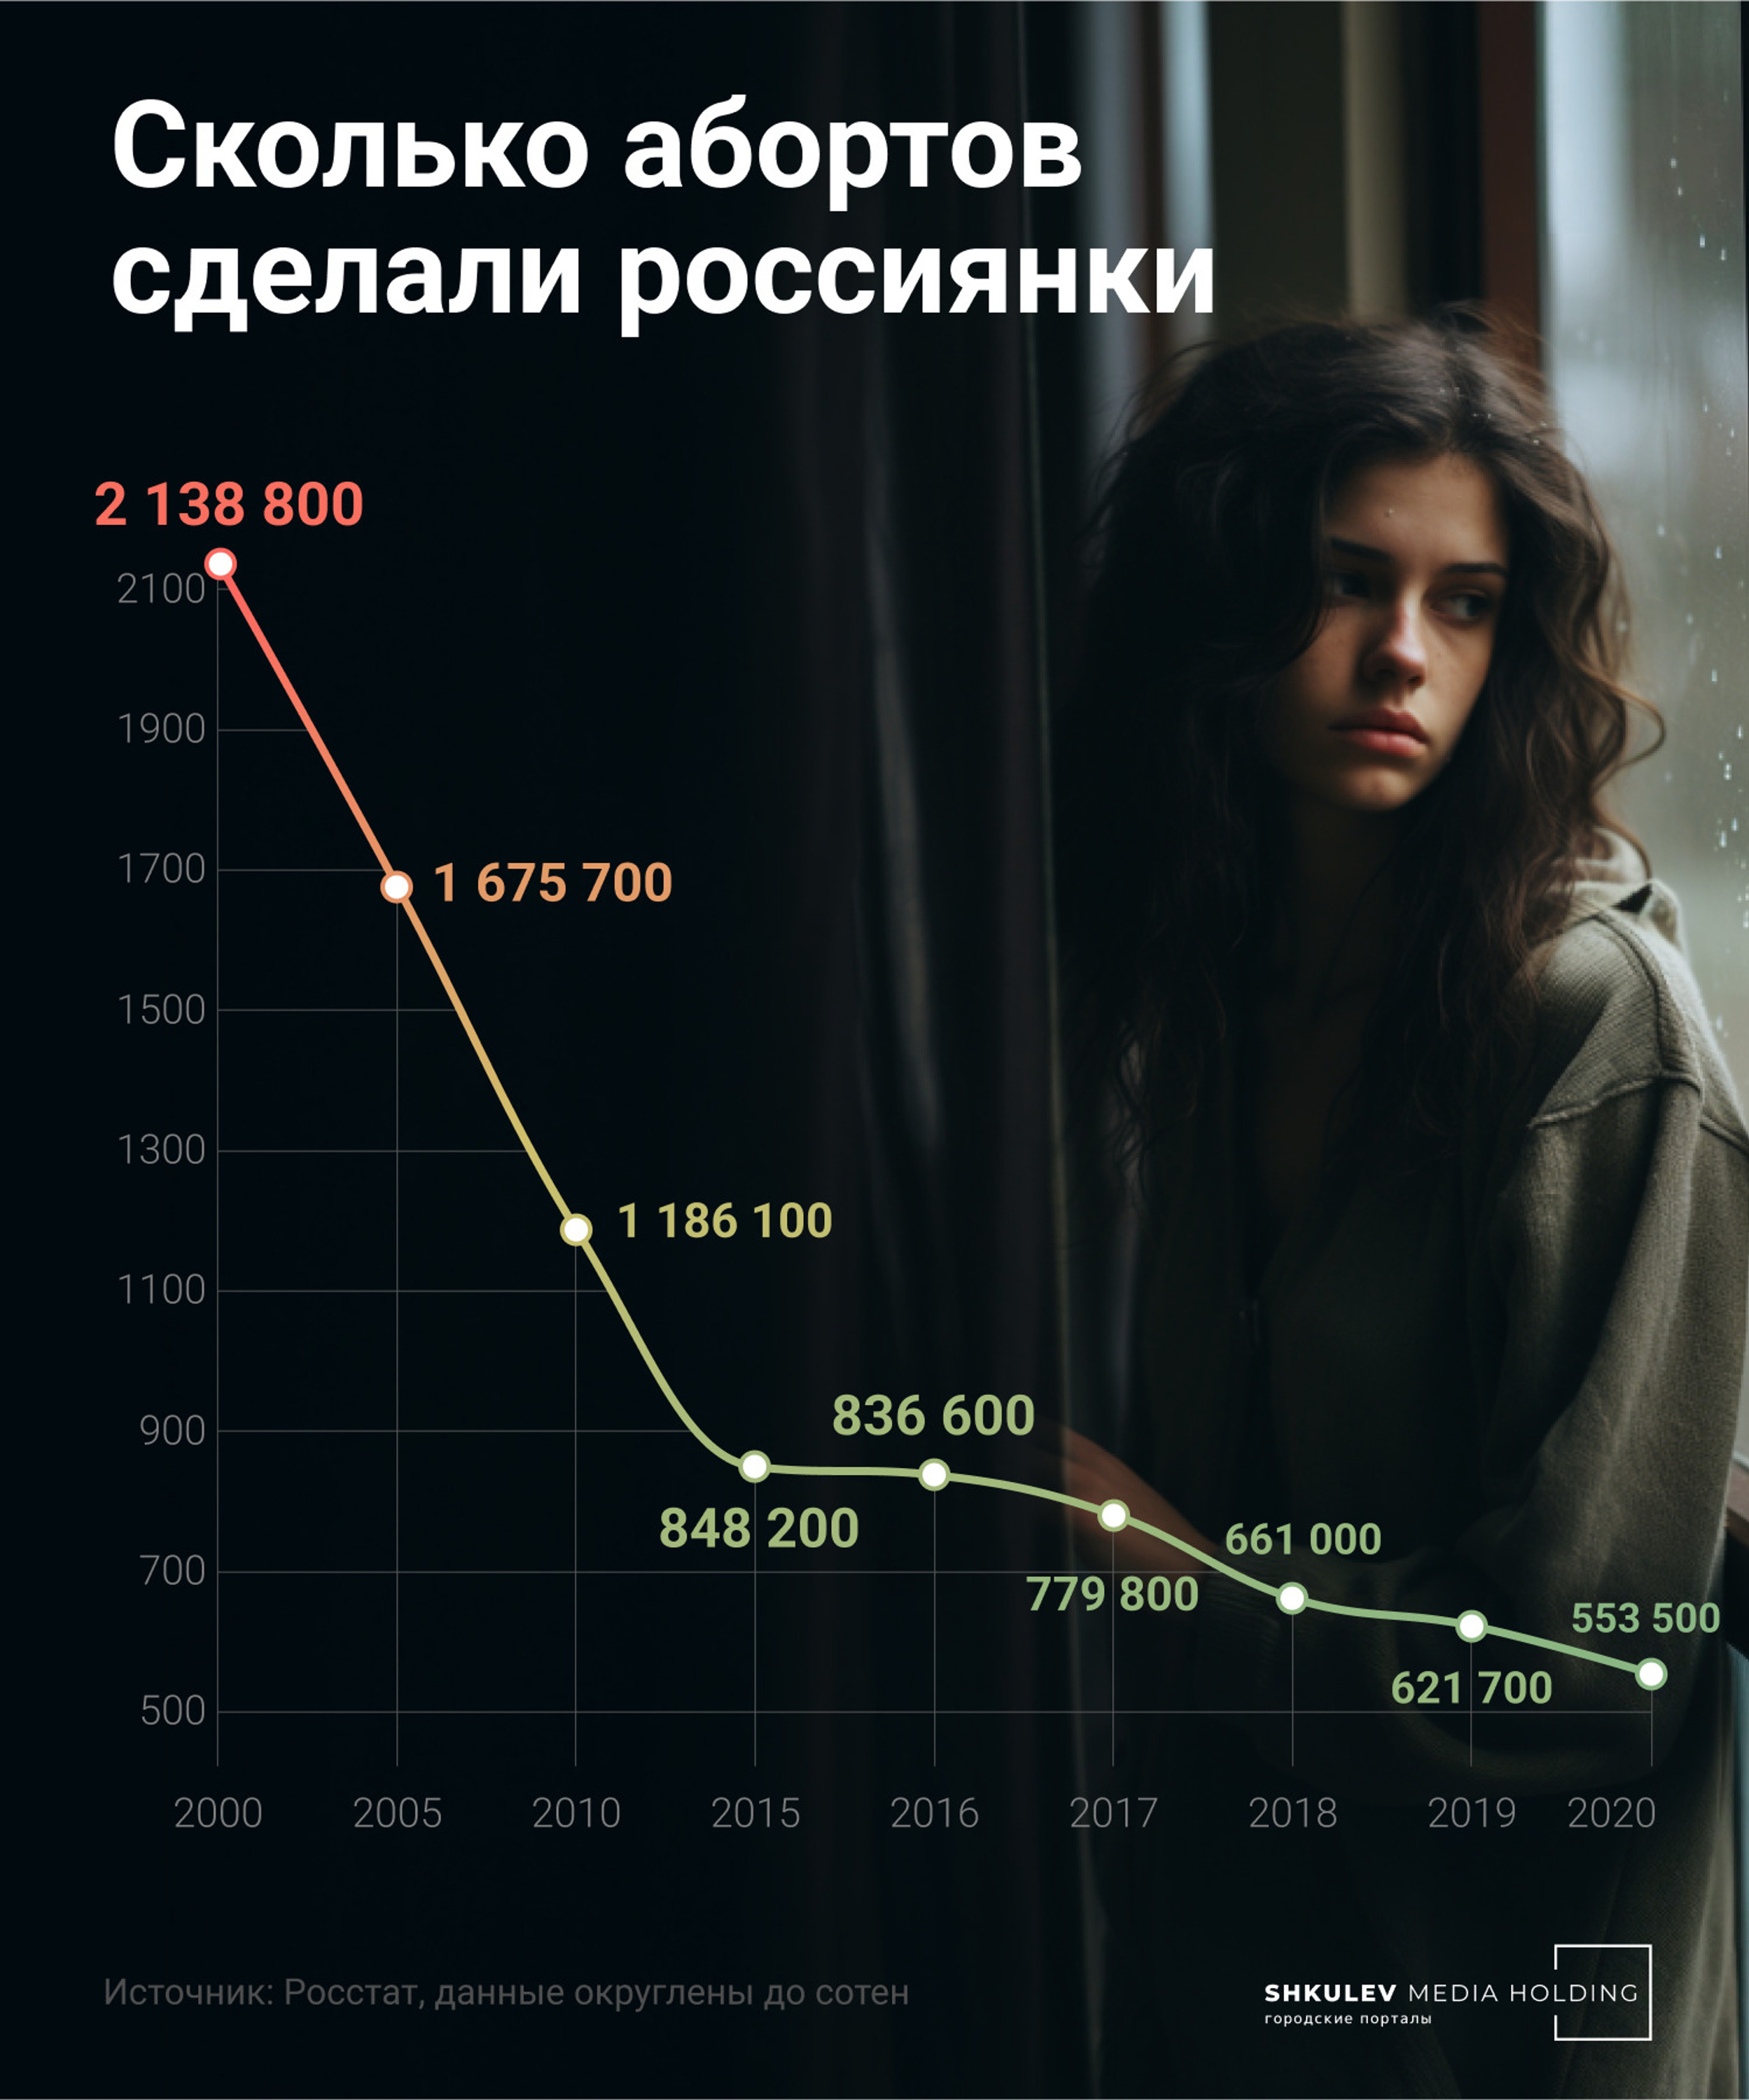 За <nobr class="_">20 лет</nobr> число абортов в России снизилось в четыре раза